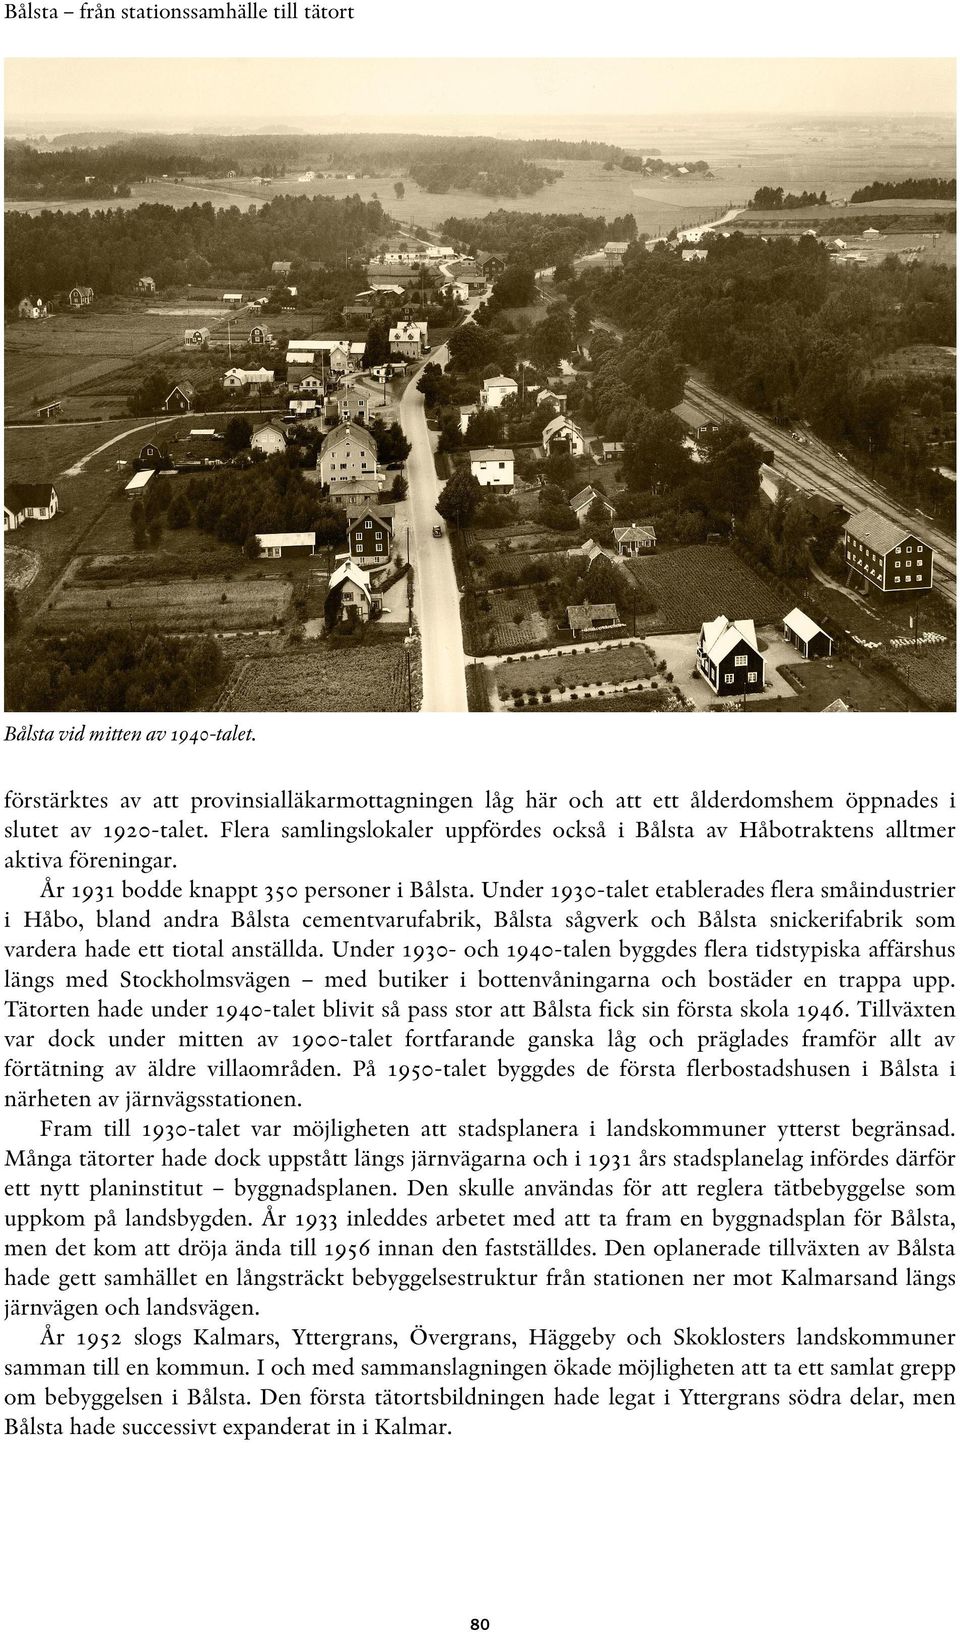 Under 1930-talet etablerades flera småindustrier i Håbo, bland andra Bålsta cementvarufabrik, Bålsta sågverk och Bålsta snickerifabrik som vardera hade ett tiotal anställda.